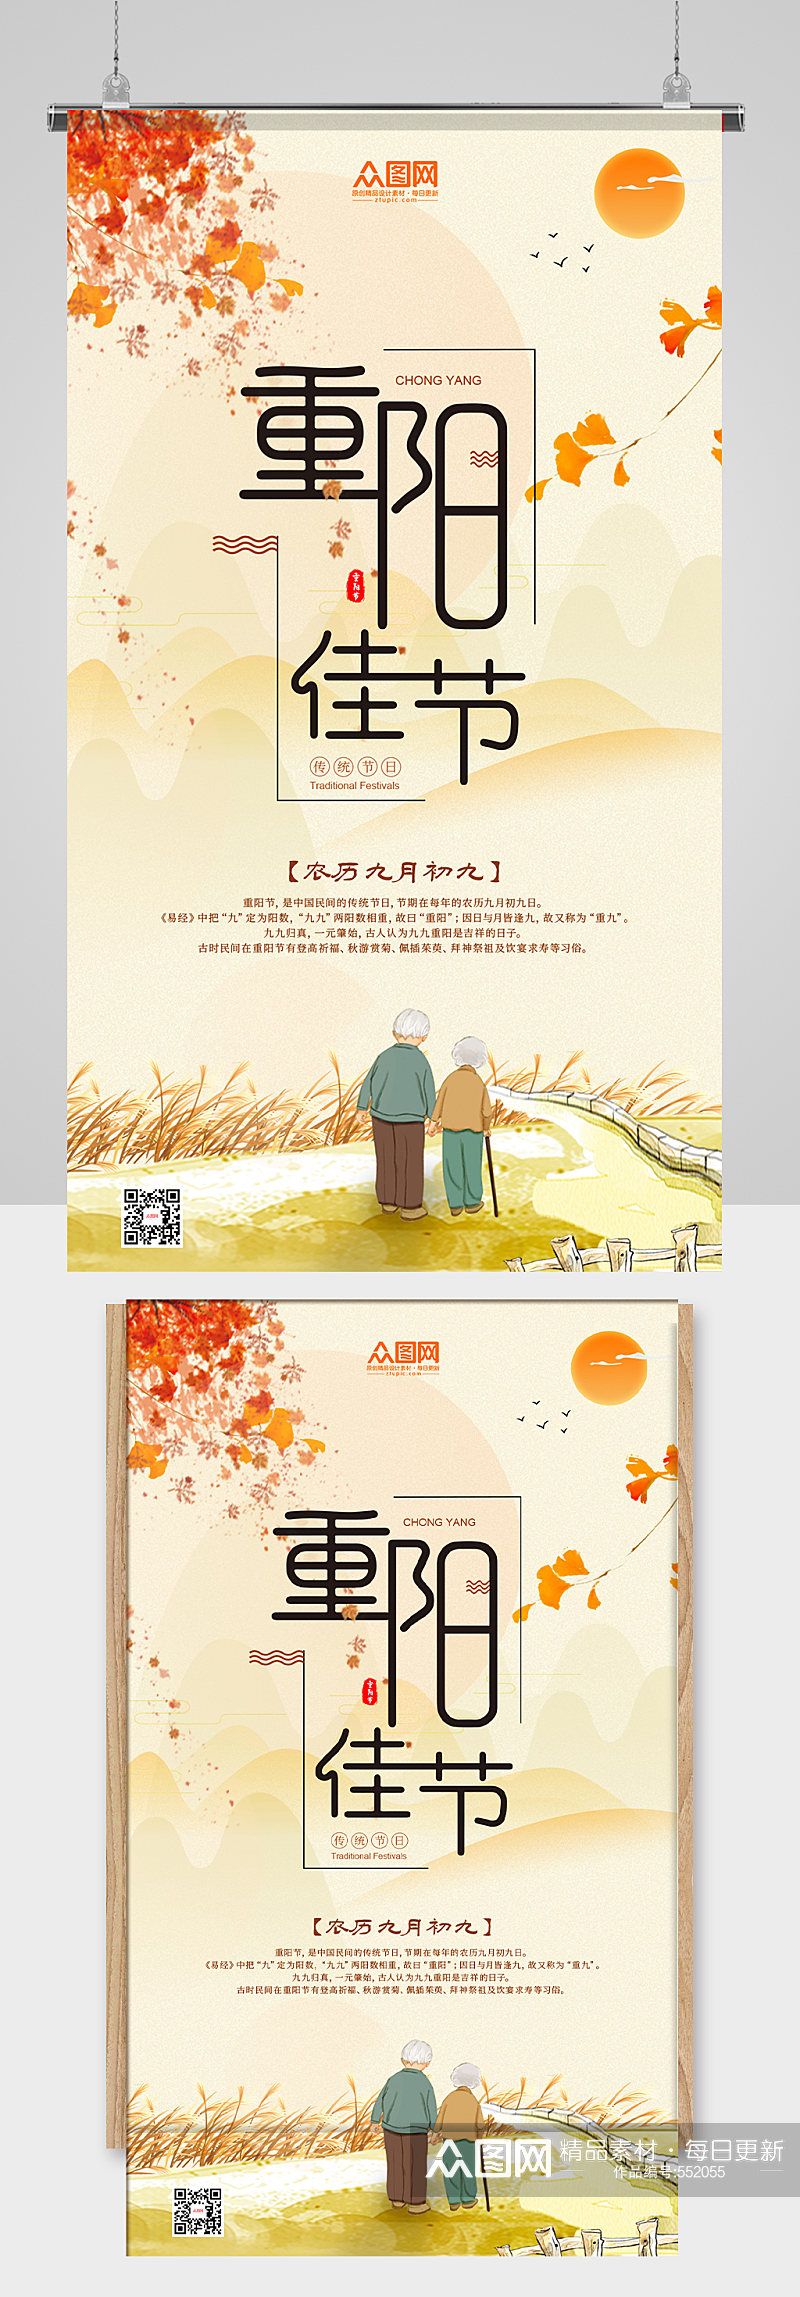 中国传统九月初九重阳节手机海报素材